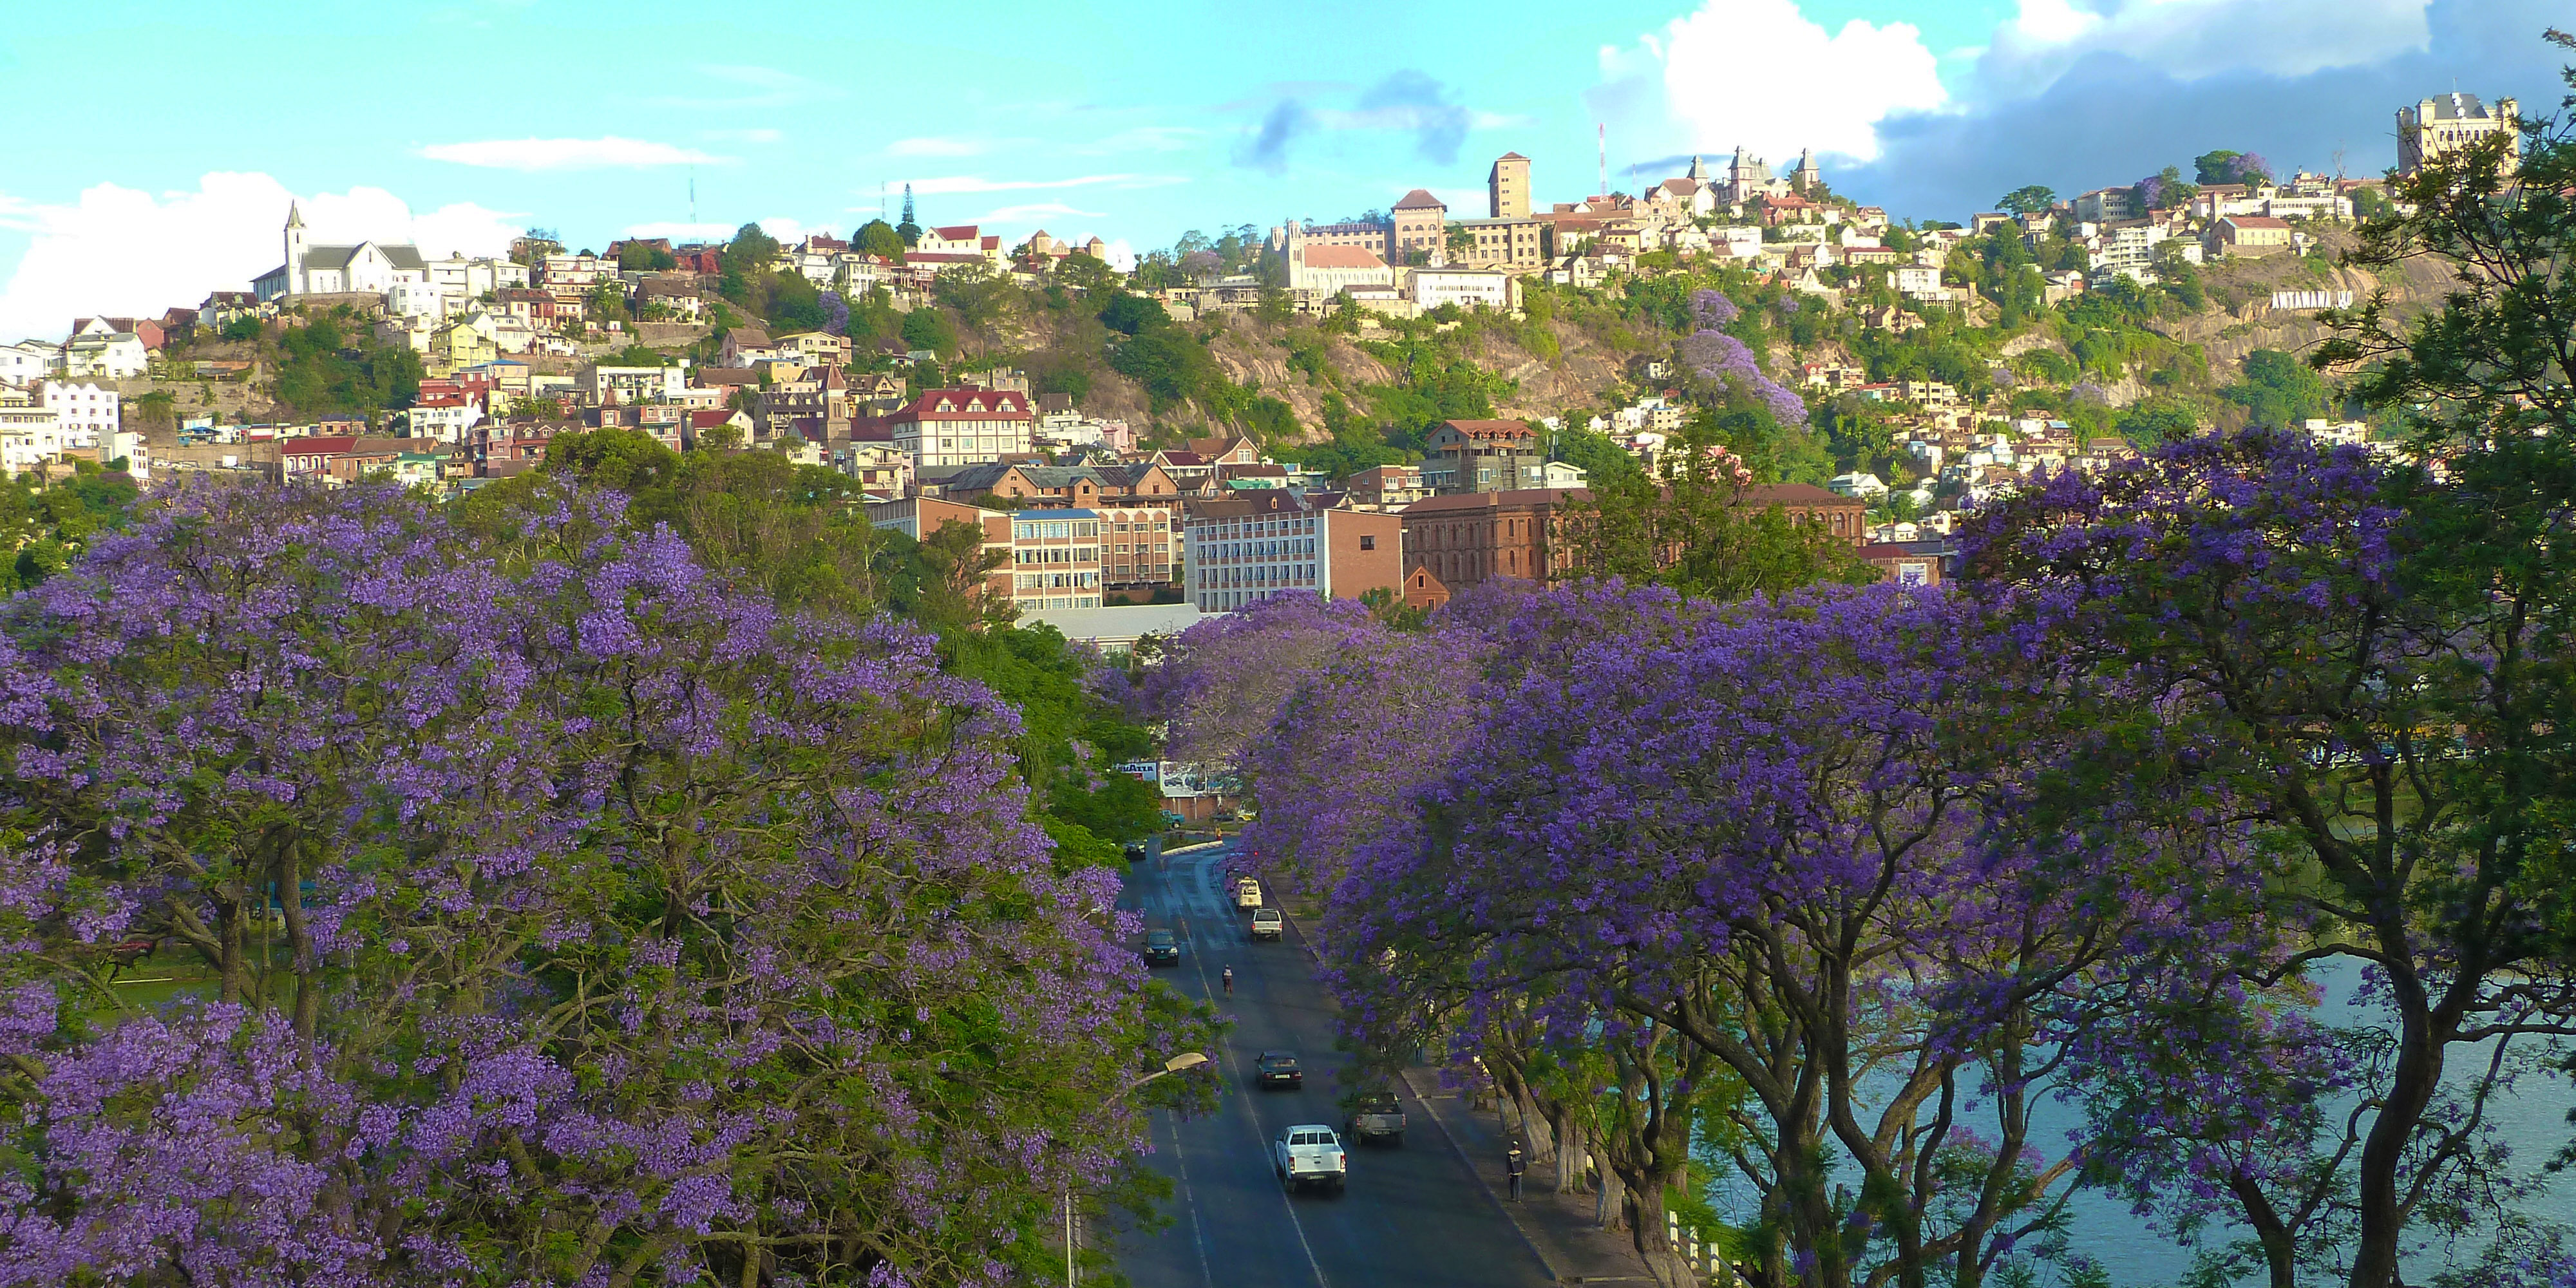 Je vliegt naar de hoofdstad Antananarivo, (afgekort: Tana). 
                De chauffeur wacht je op en brengt je naar het hotel gelegen in de stad